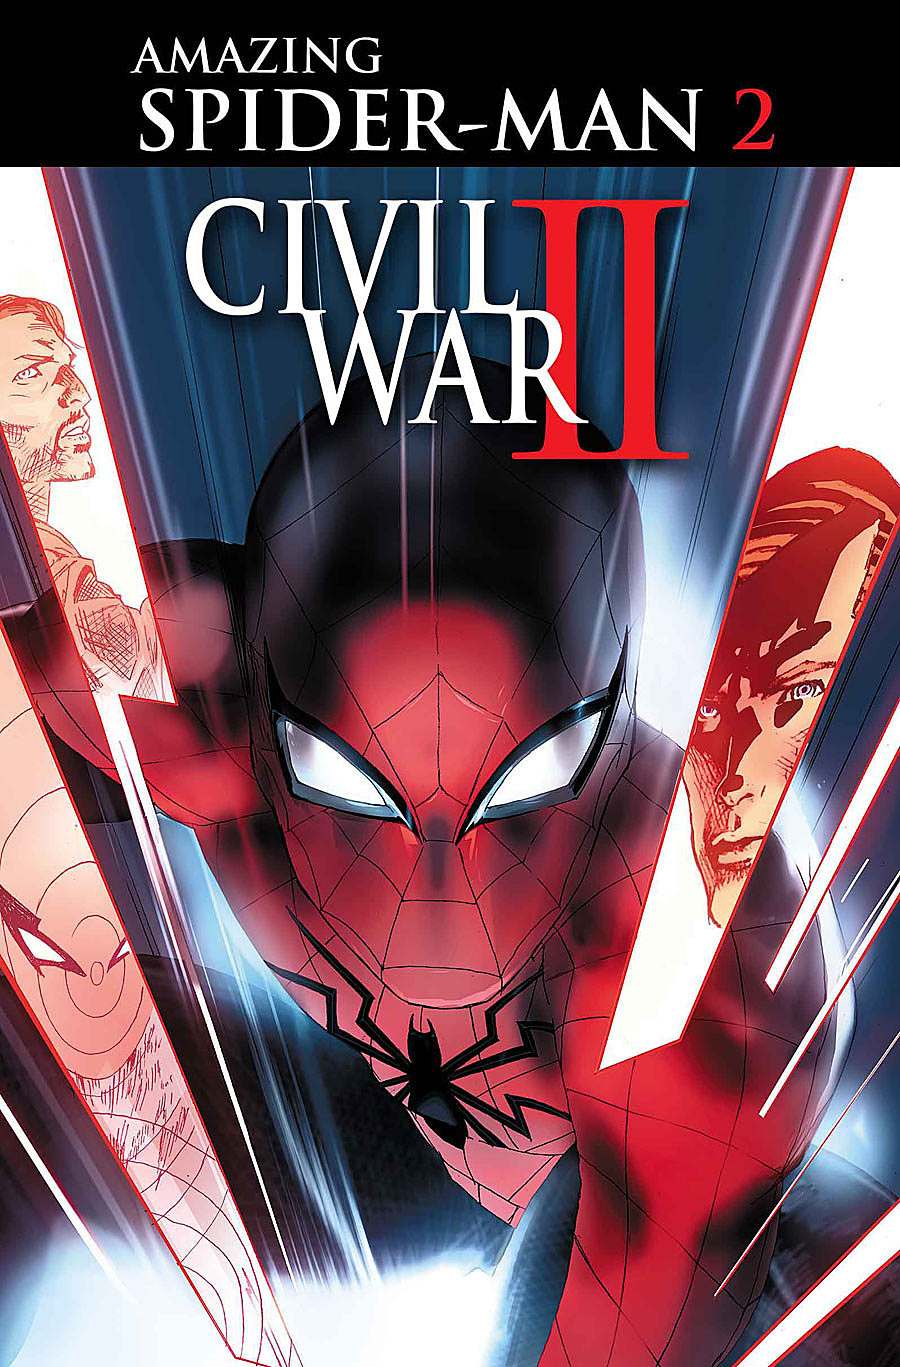 Civil War II: The Amazing Spider-Man